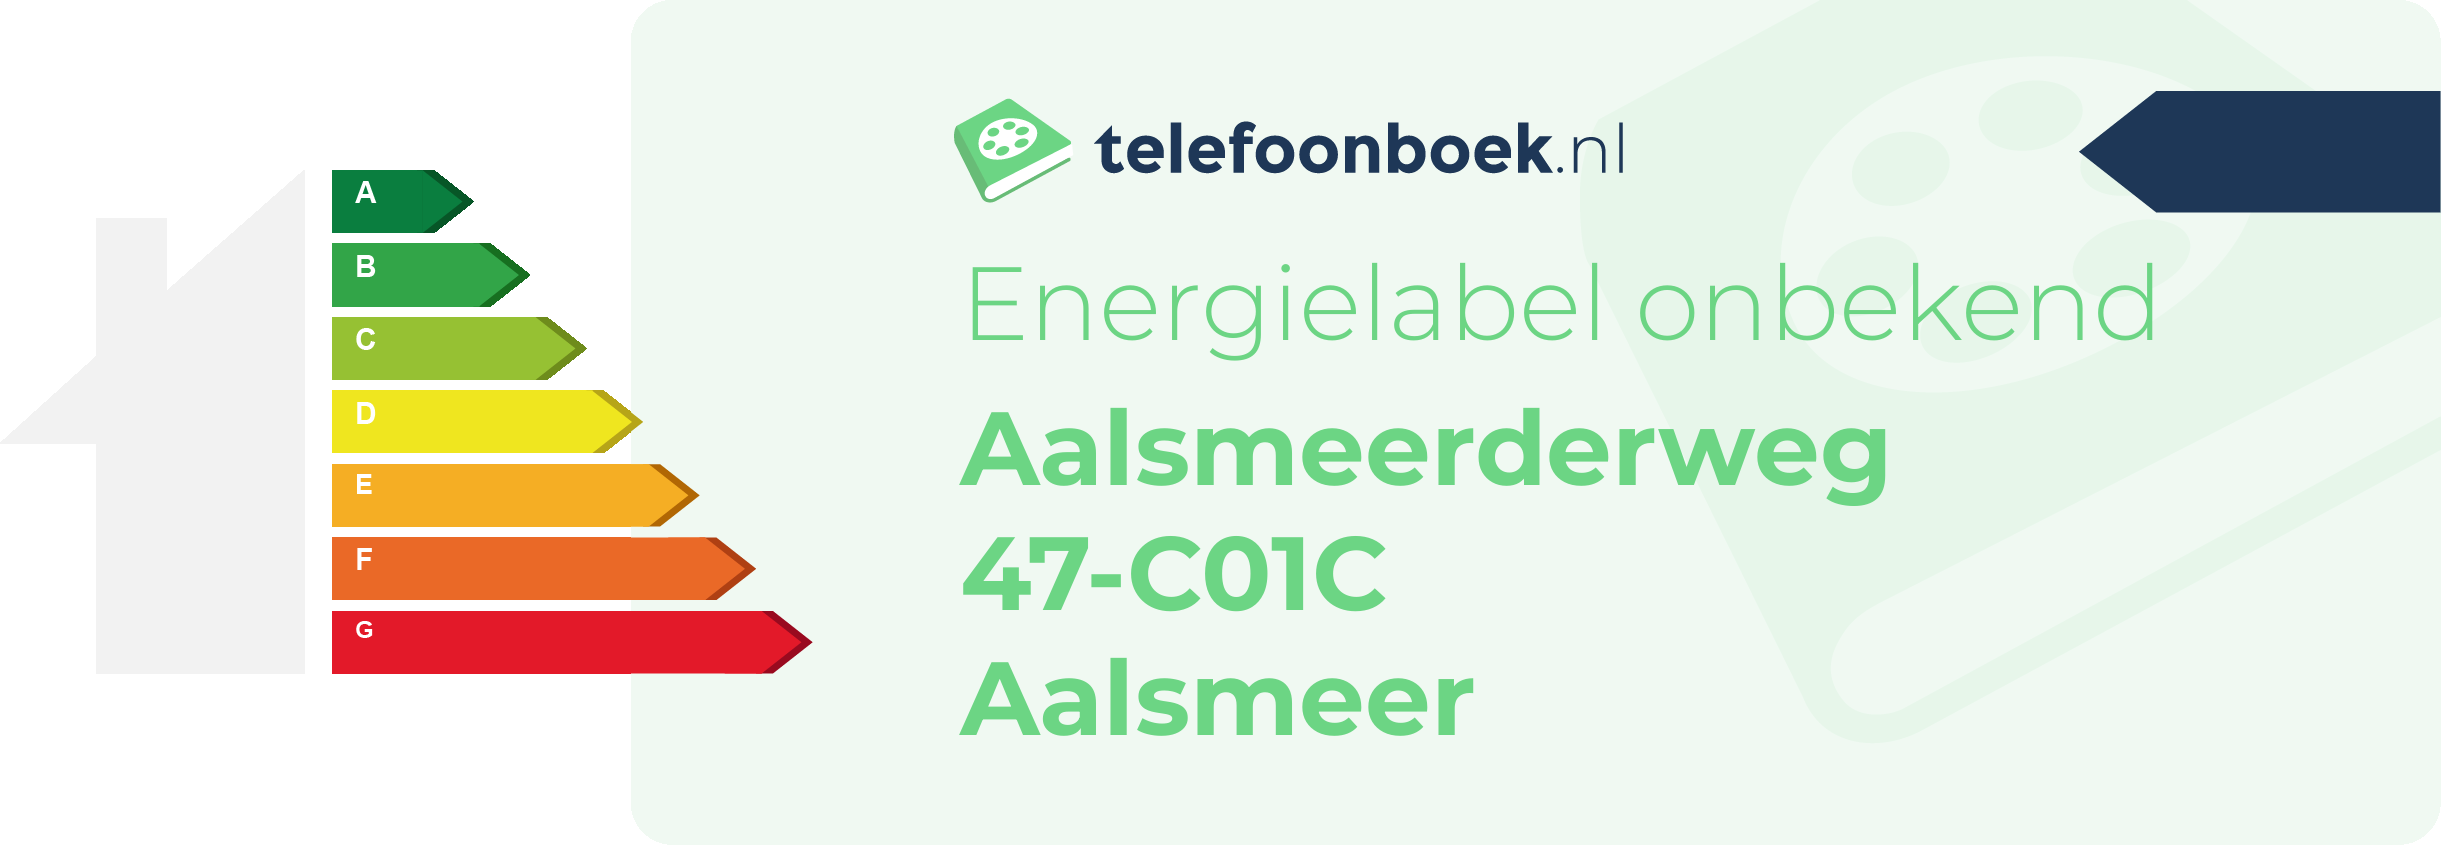 Energielabel Aalsmeerderweg 47-C01C Aalsmeer